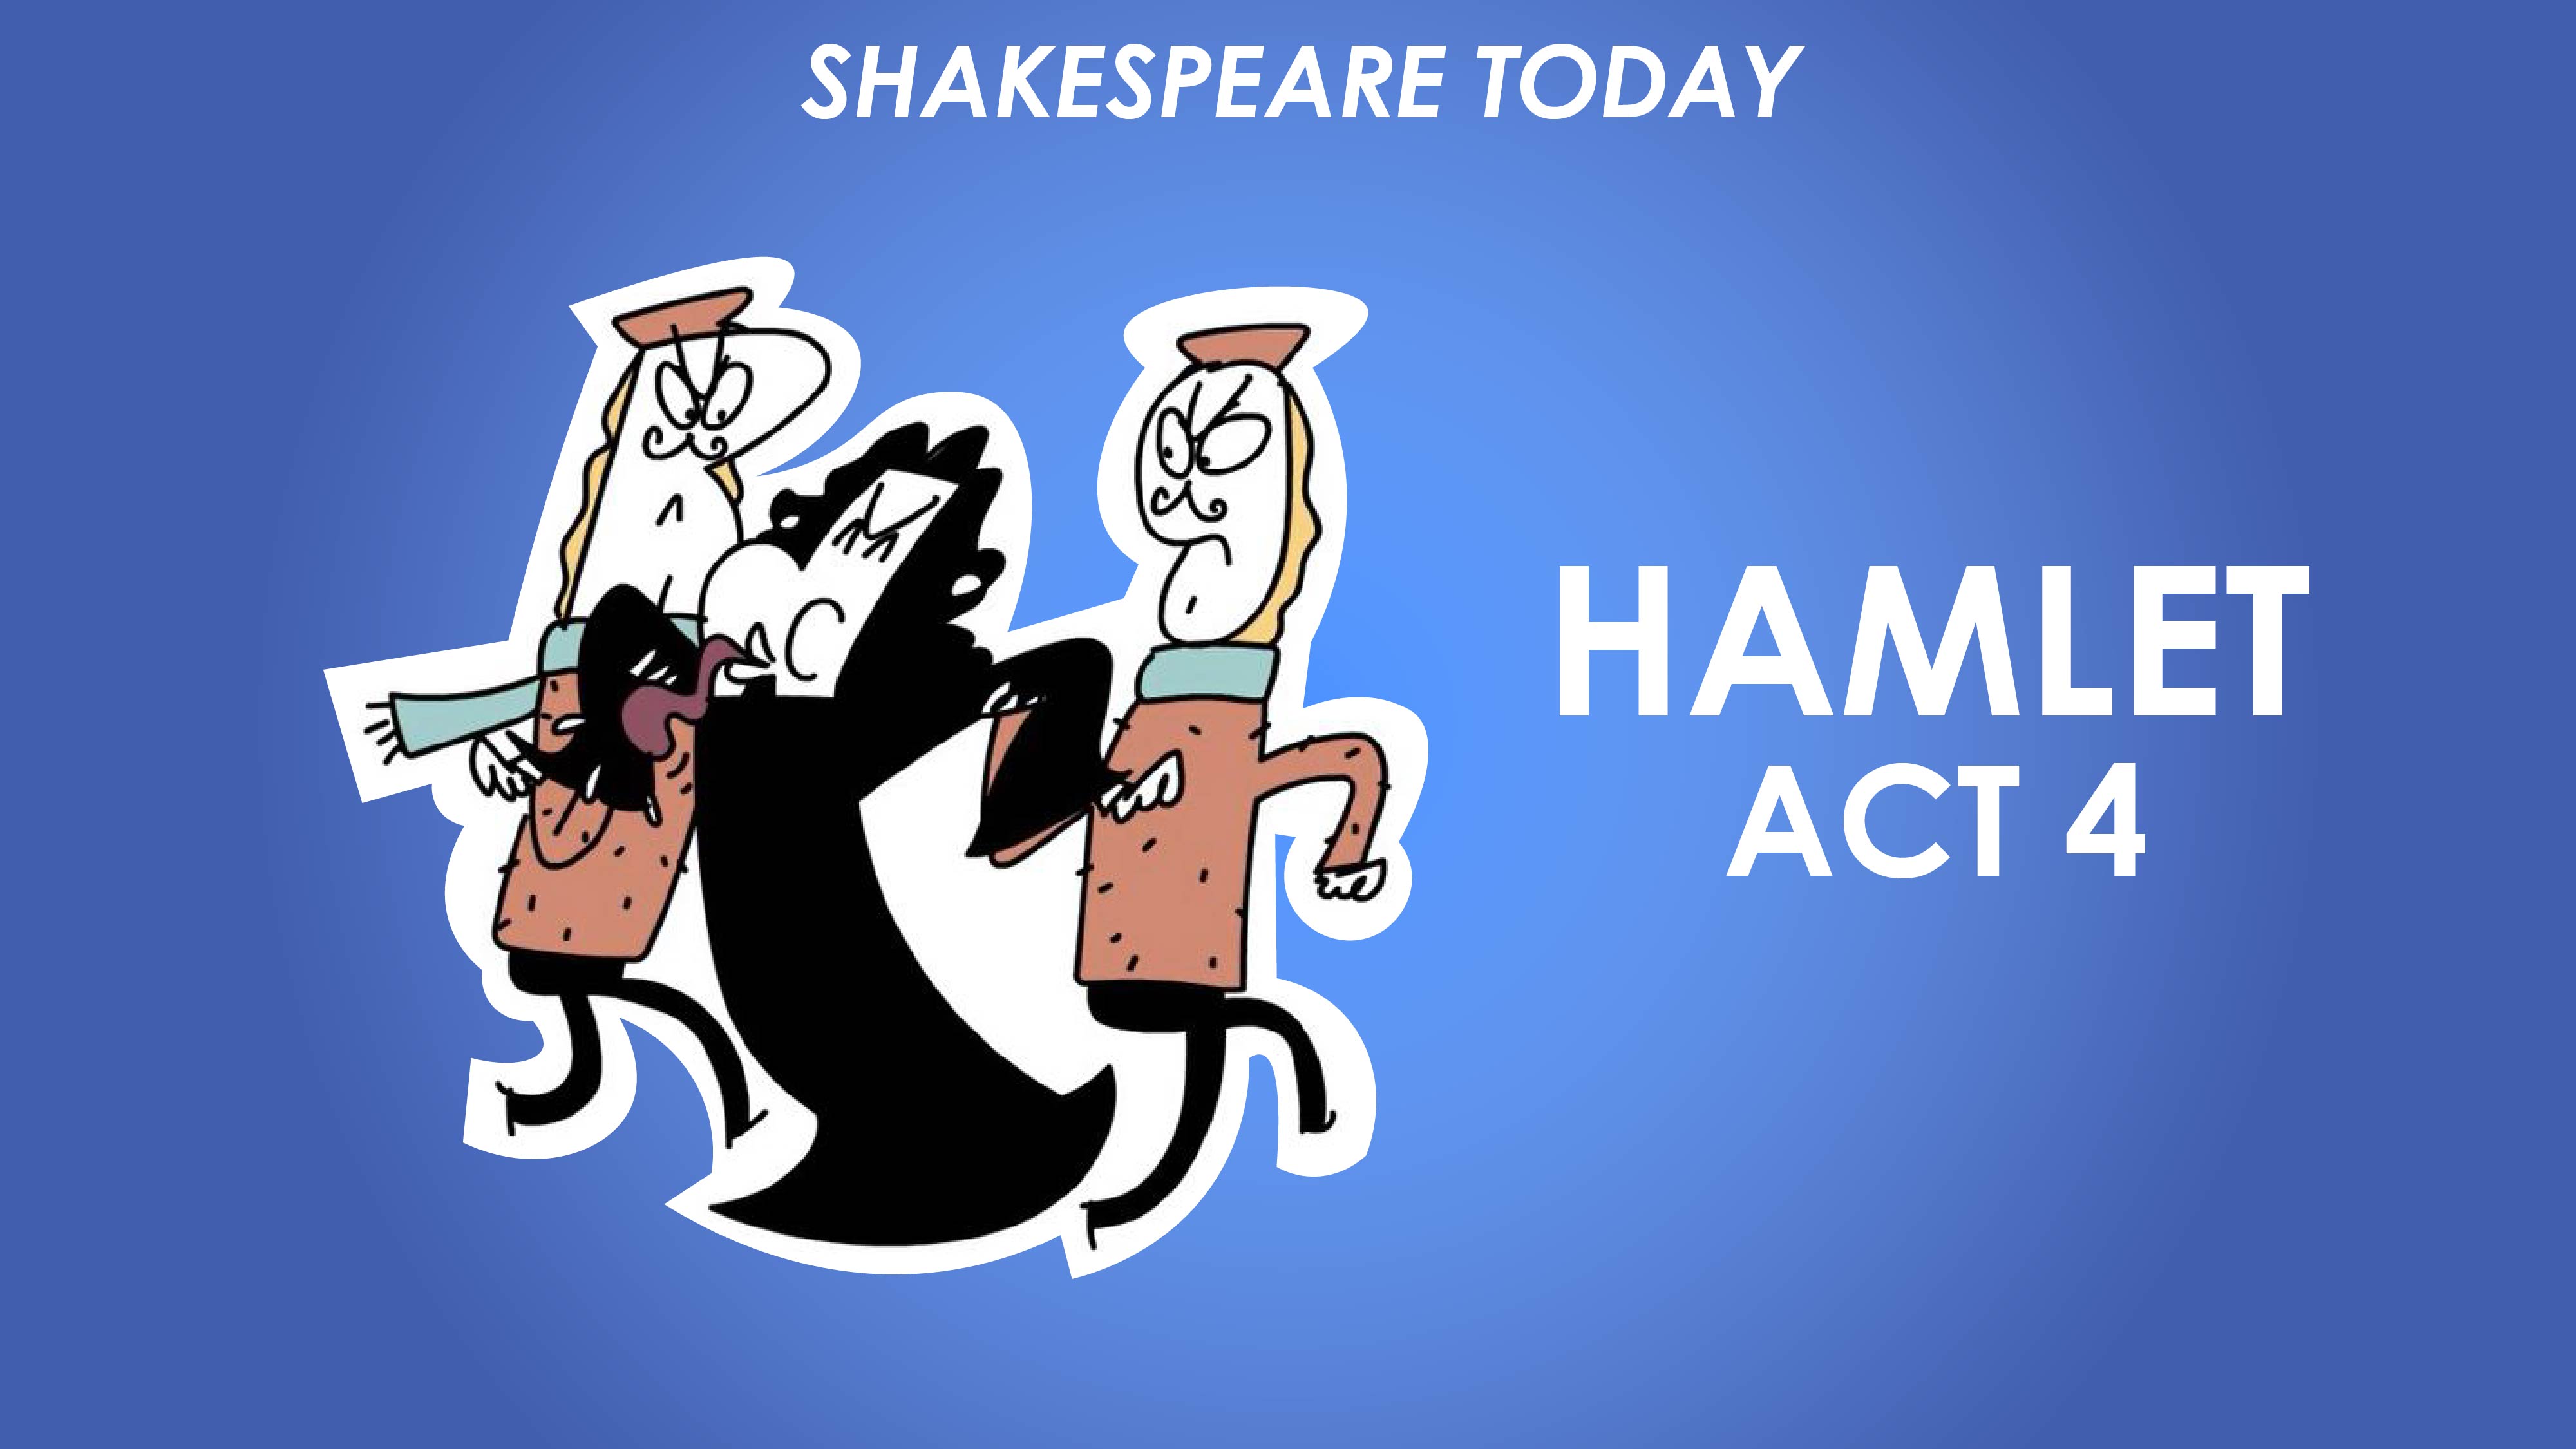 Hamlet Act 4 Summary - Shakespeare Today Series